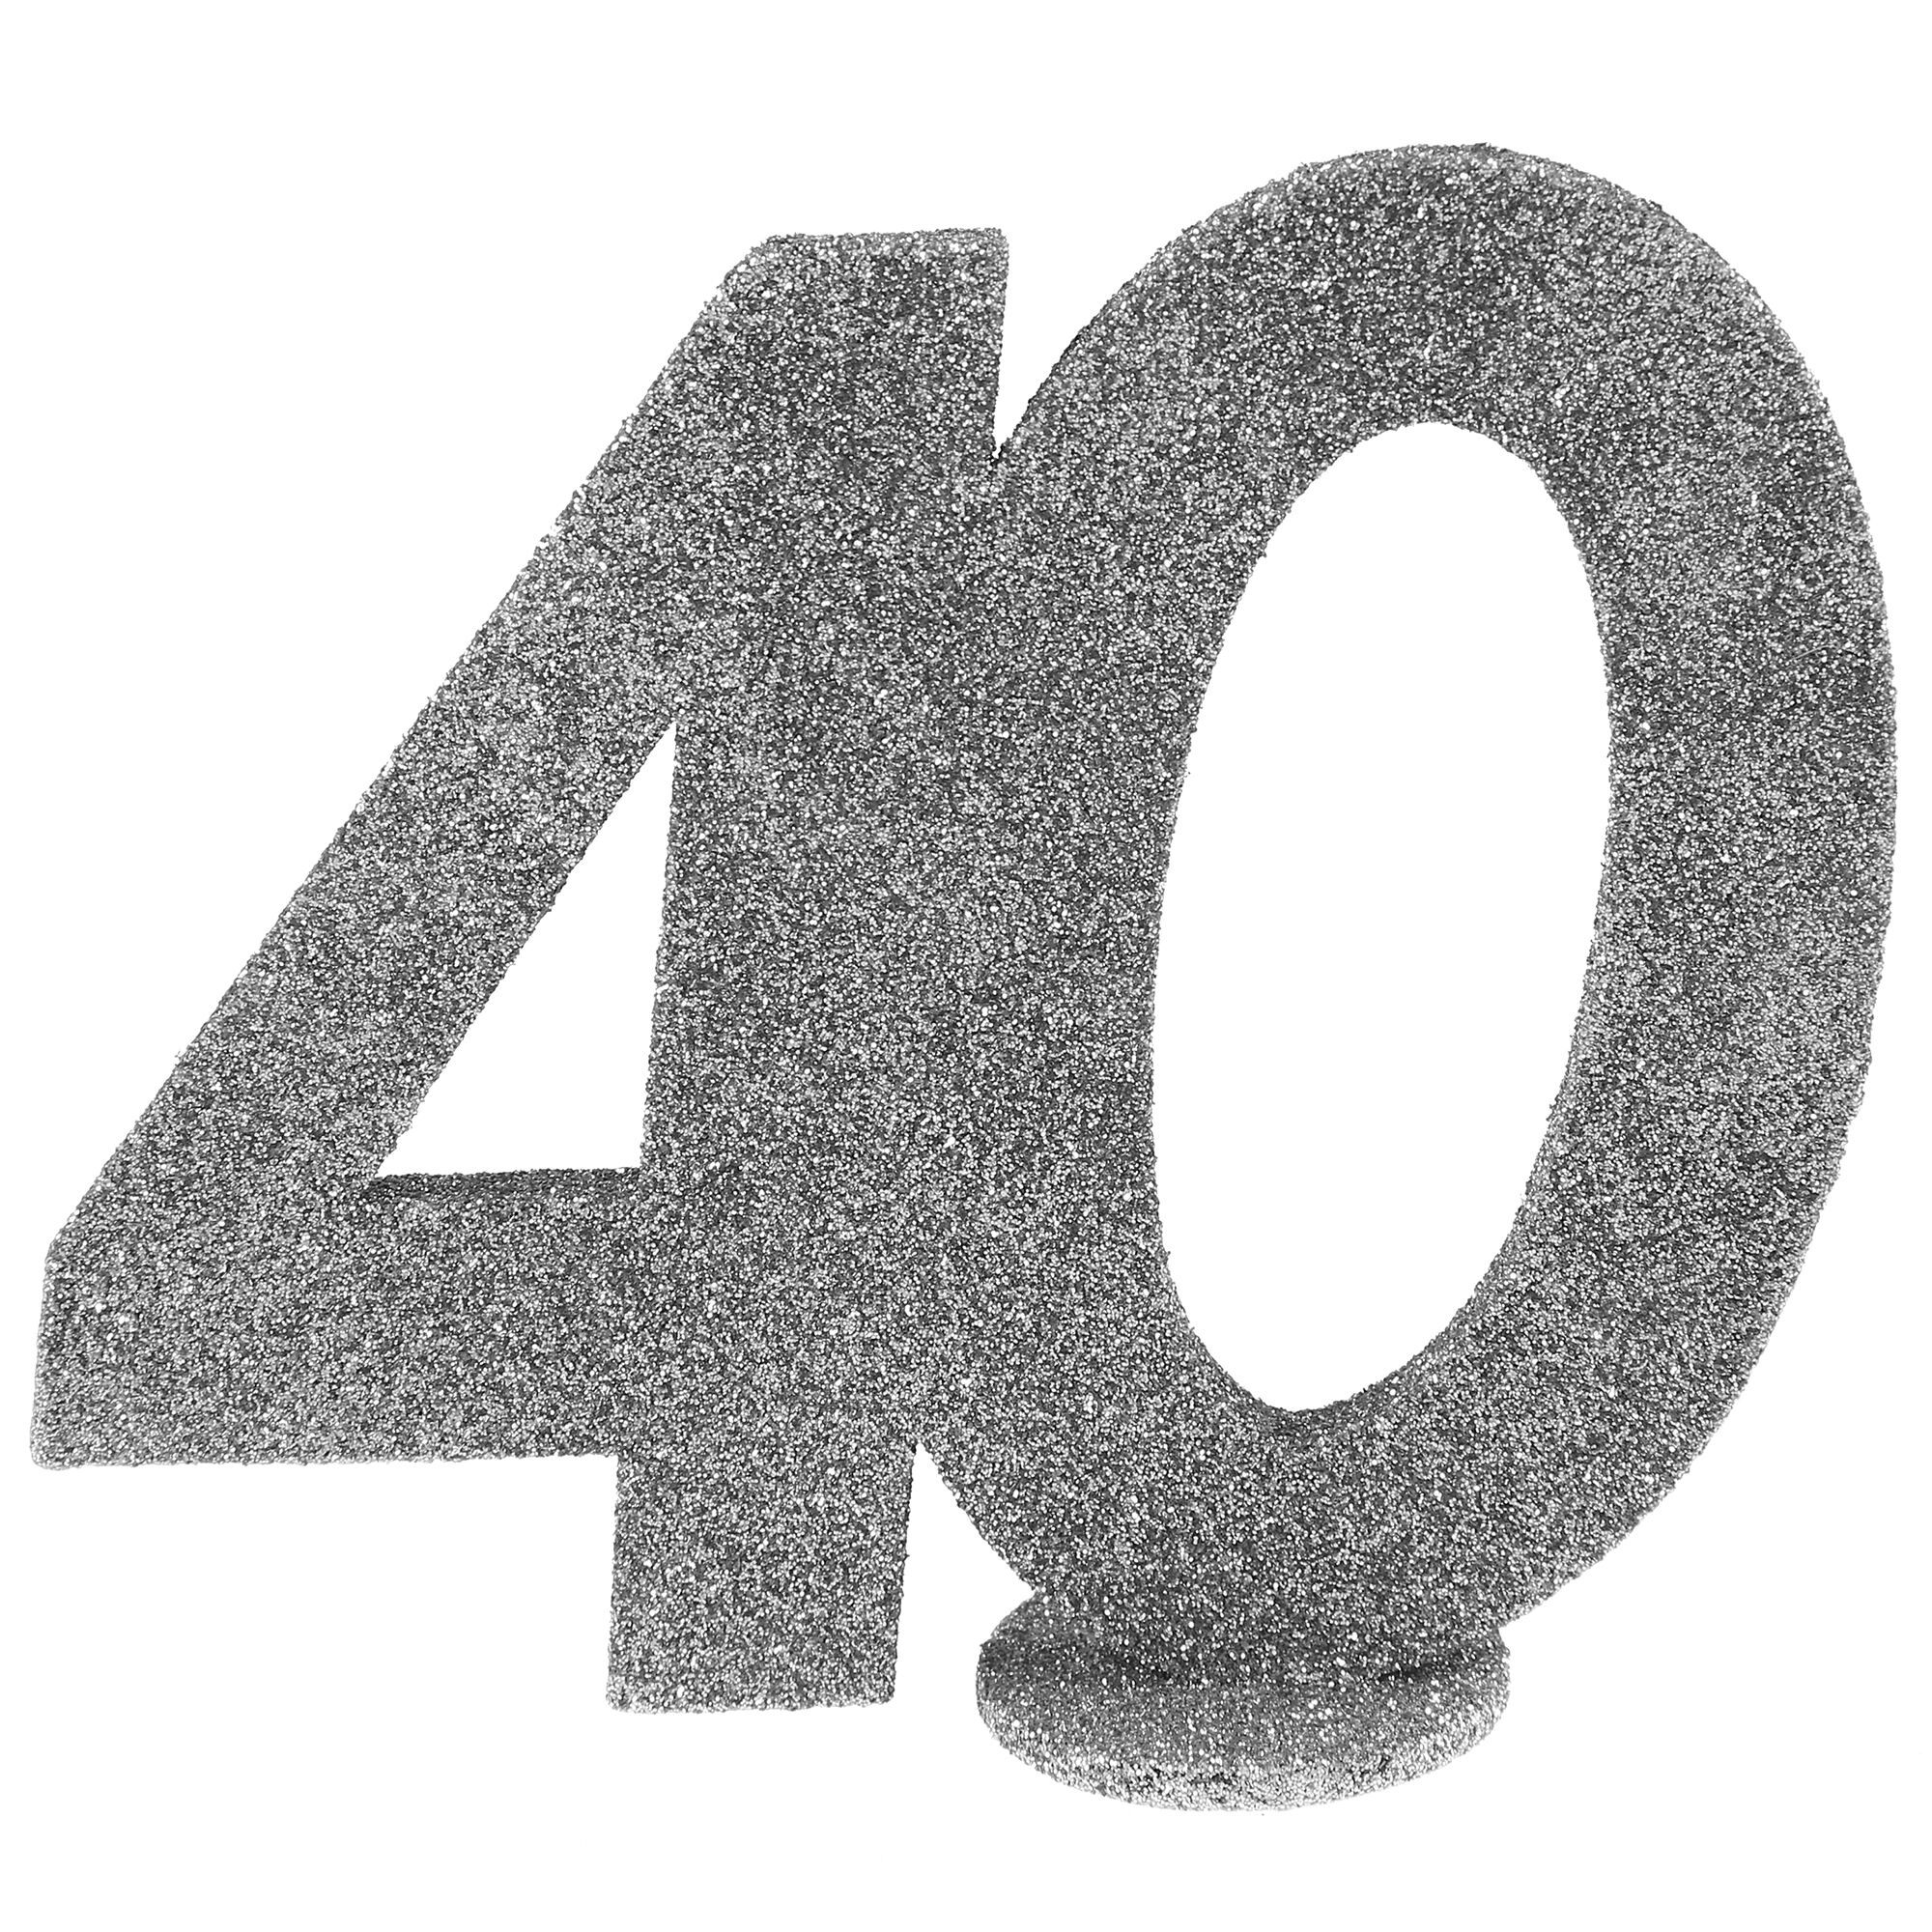 NEU Aufsteller Geburtstags-Zahl 40, glitter-silber, ca. 10cm